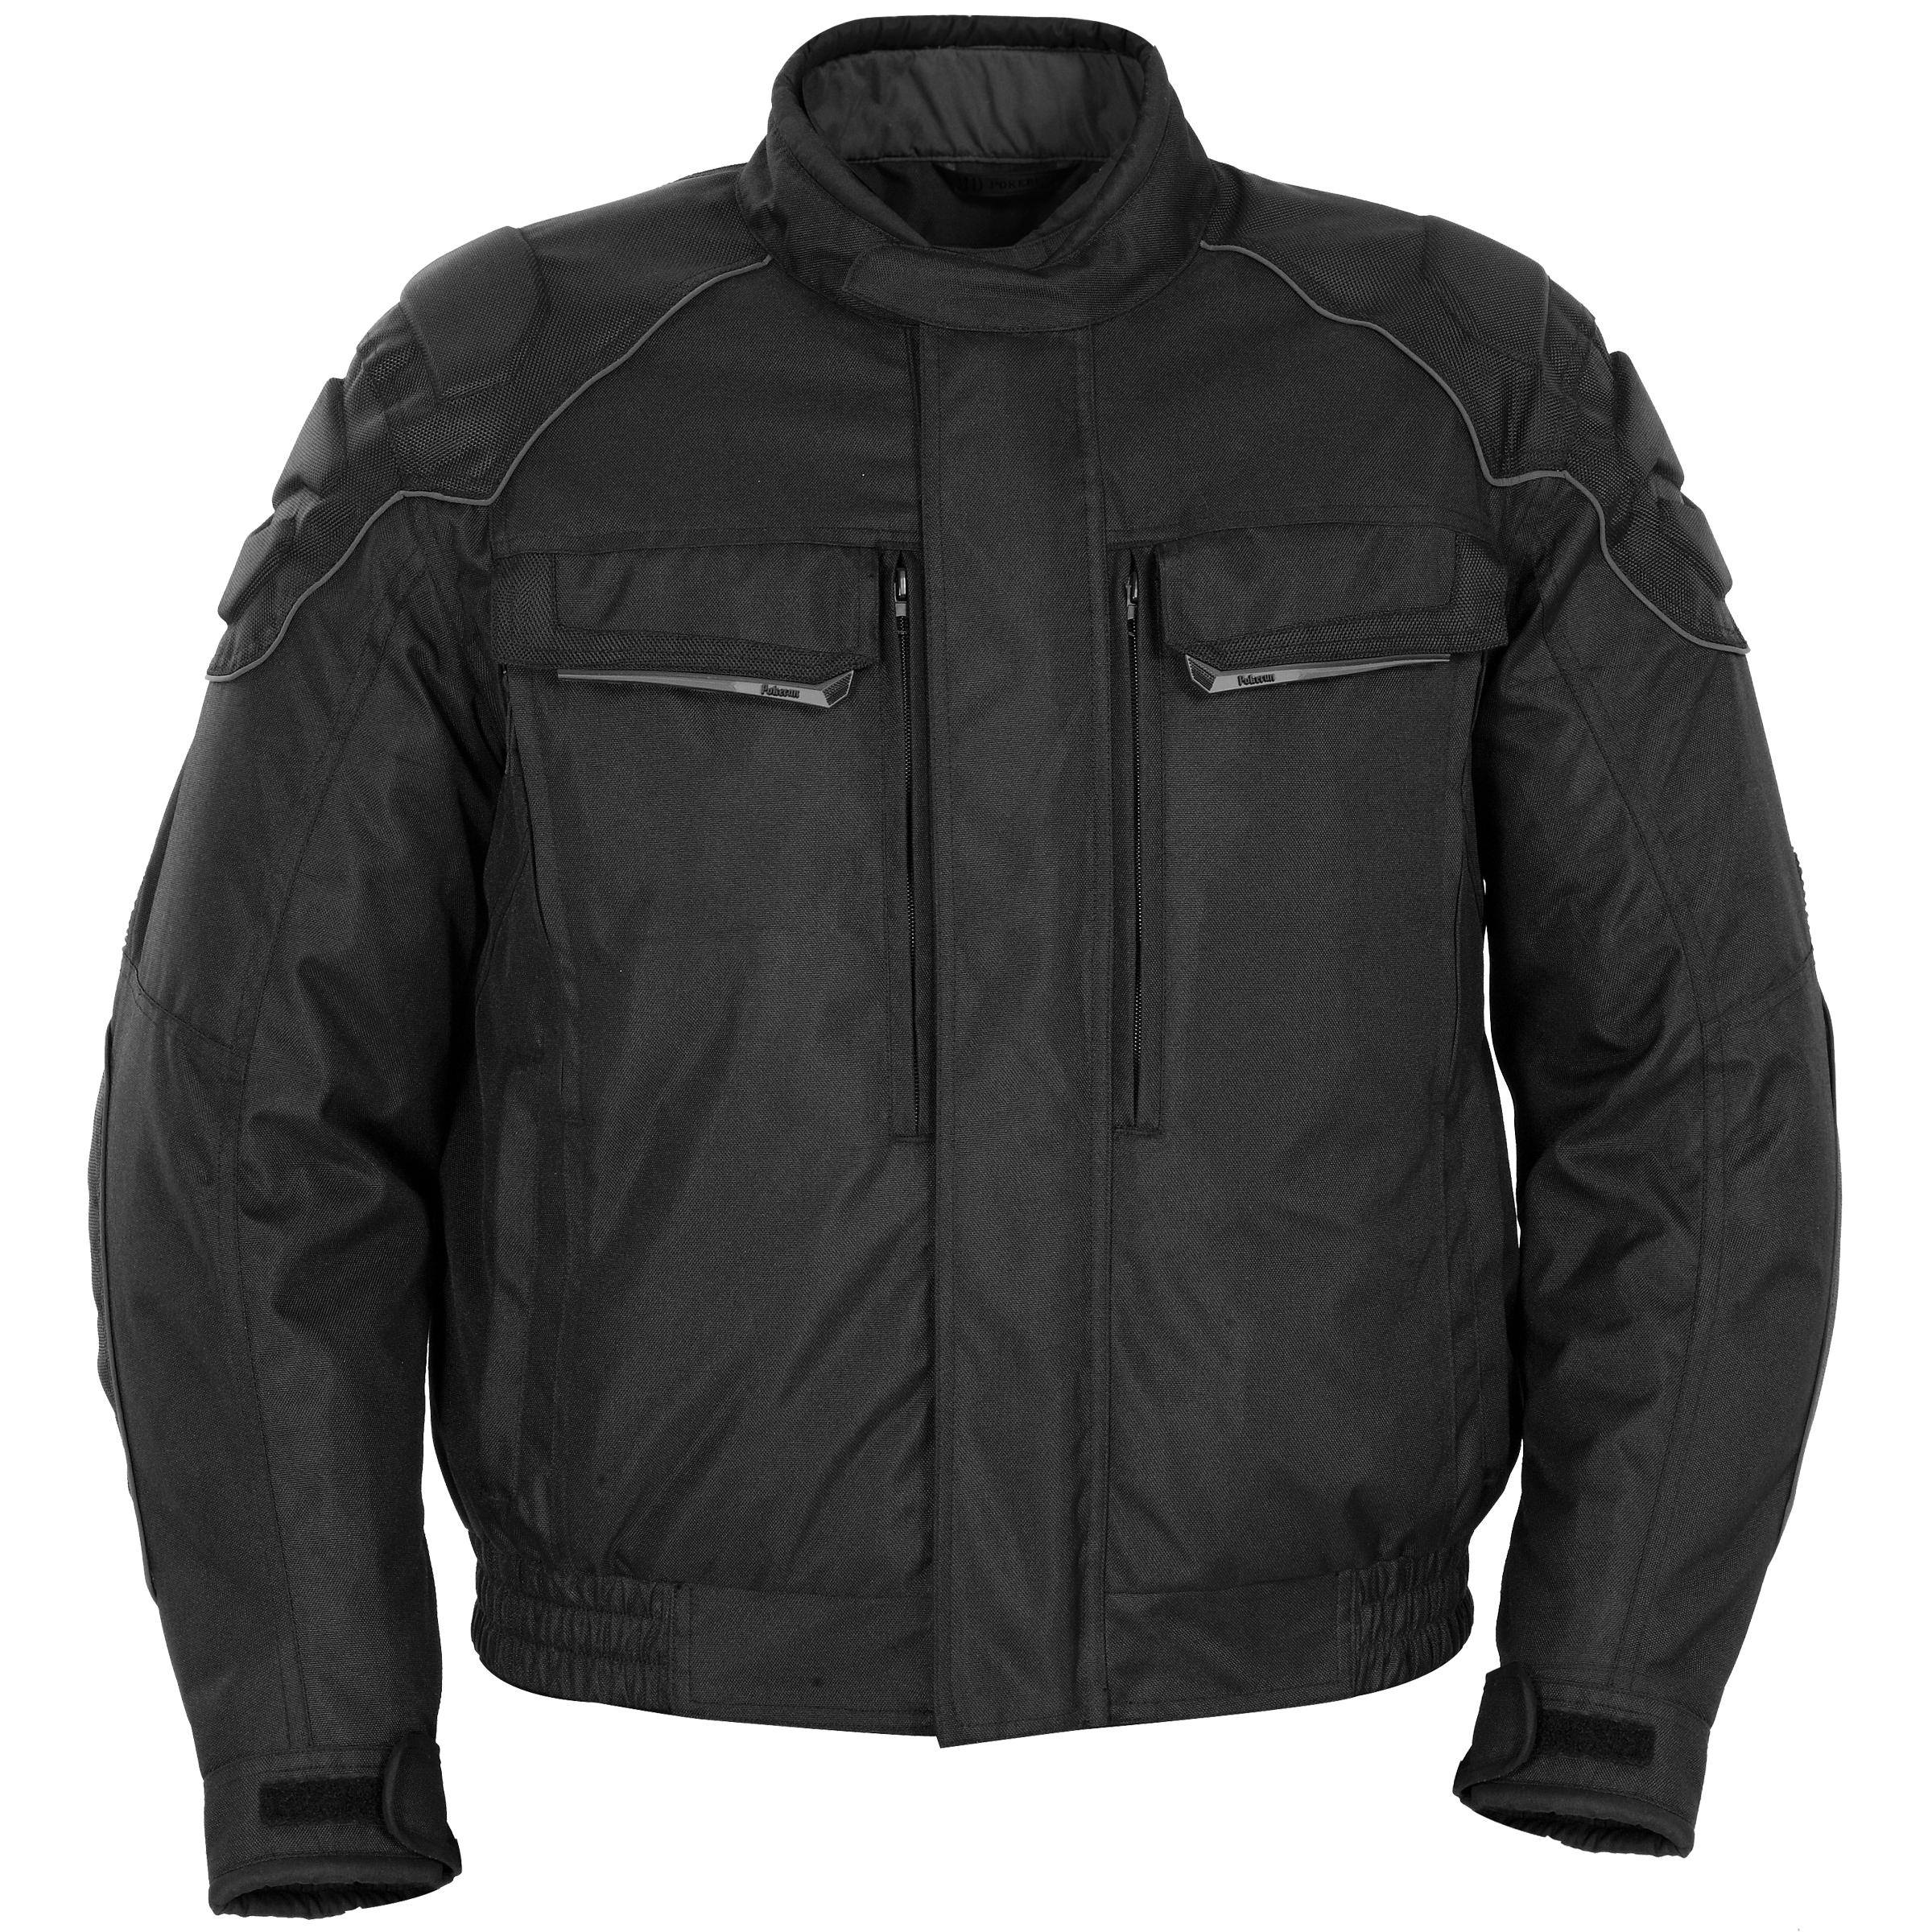 Pokerun eagle 2.0 jacket motorcycle jackets